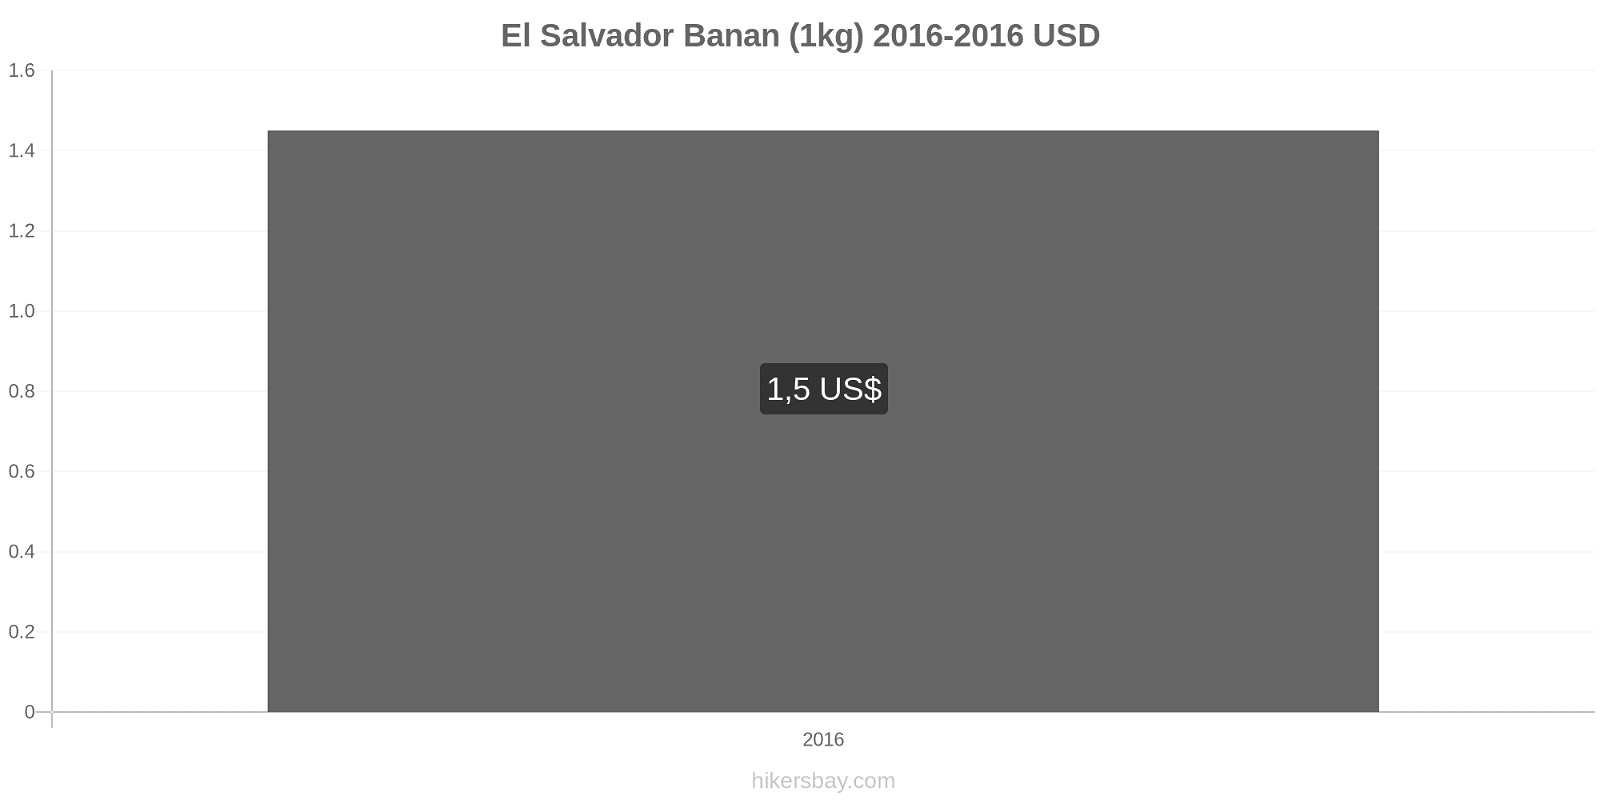 El Salvador prisændringer Bananer (1kg) hikersbay.com